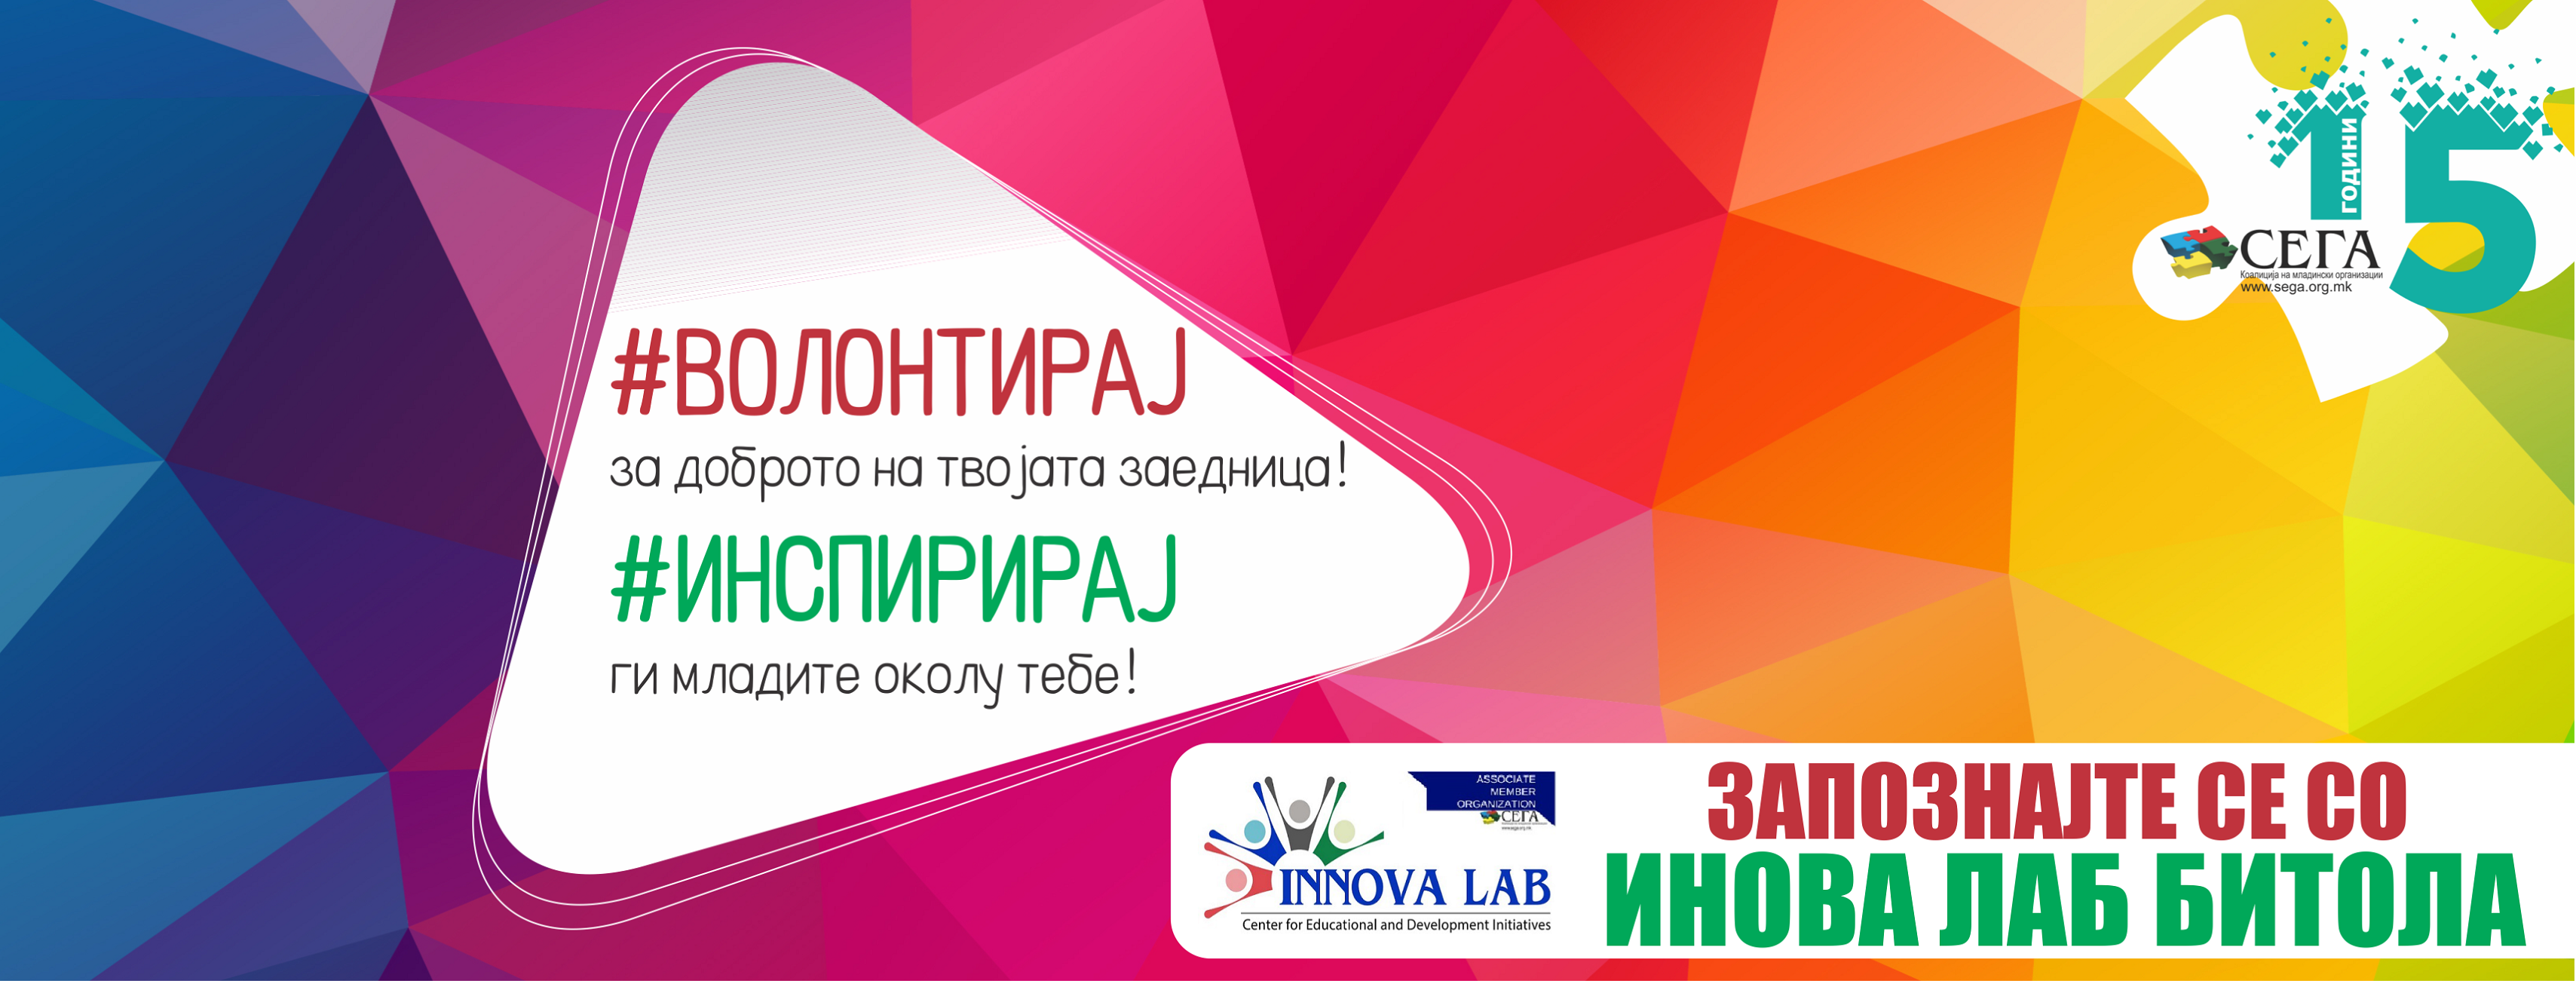 Запознајте се со ИнноваЛаб од Битола